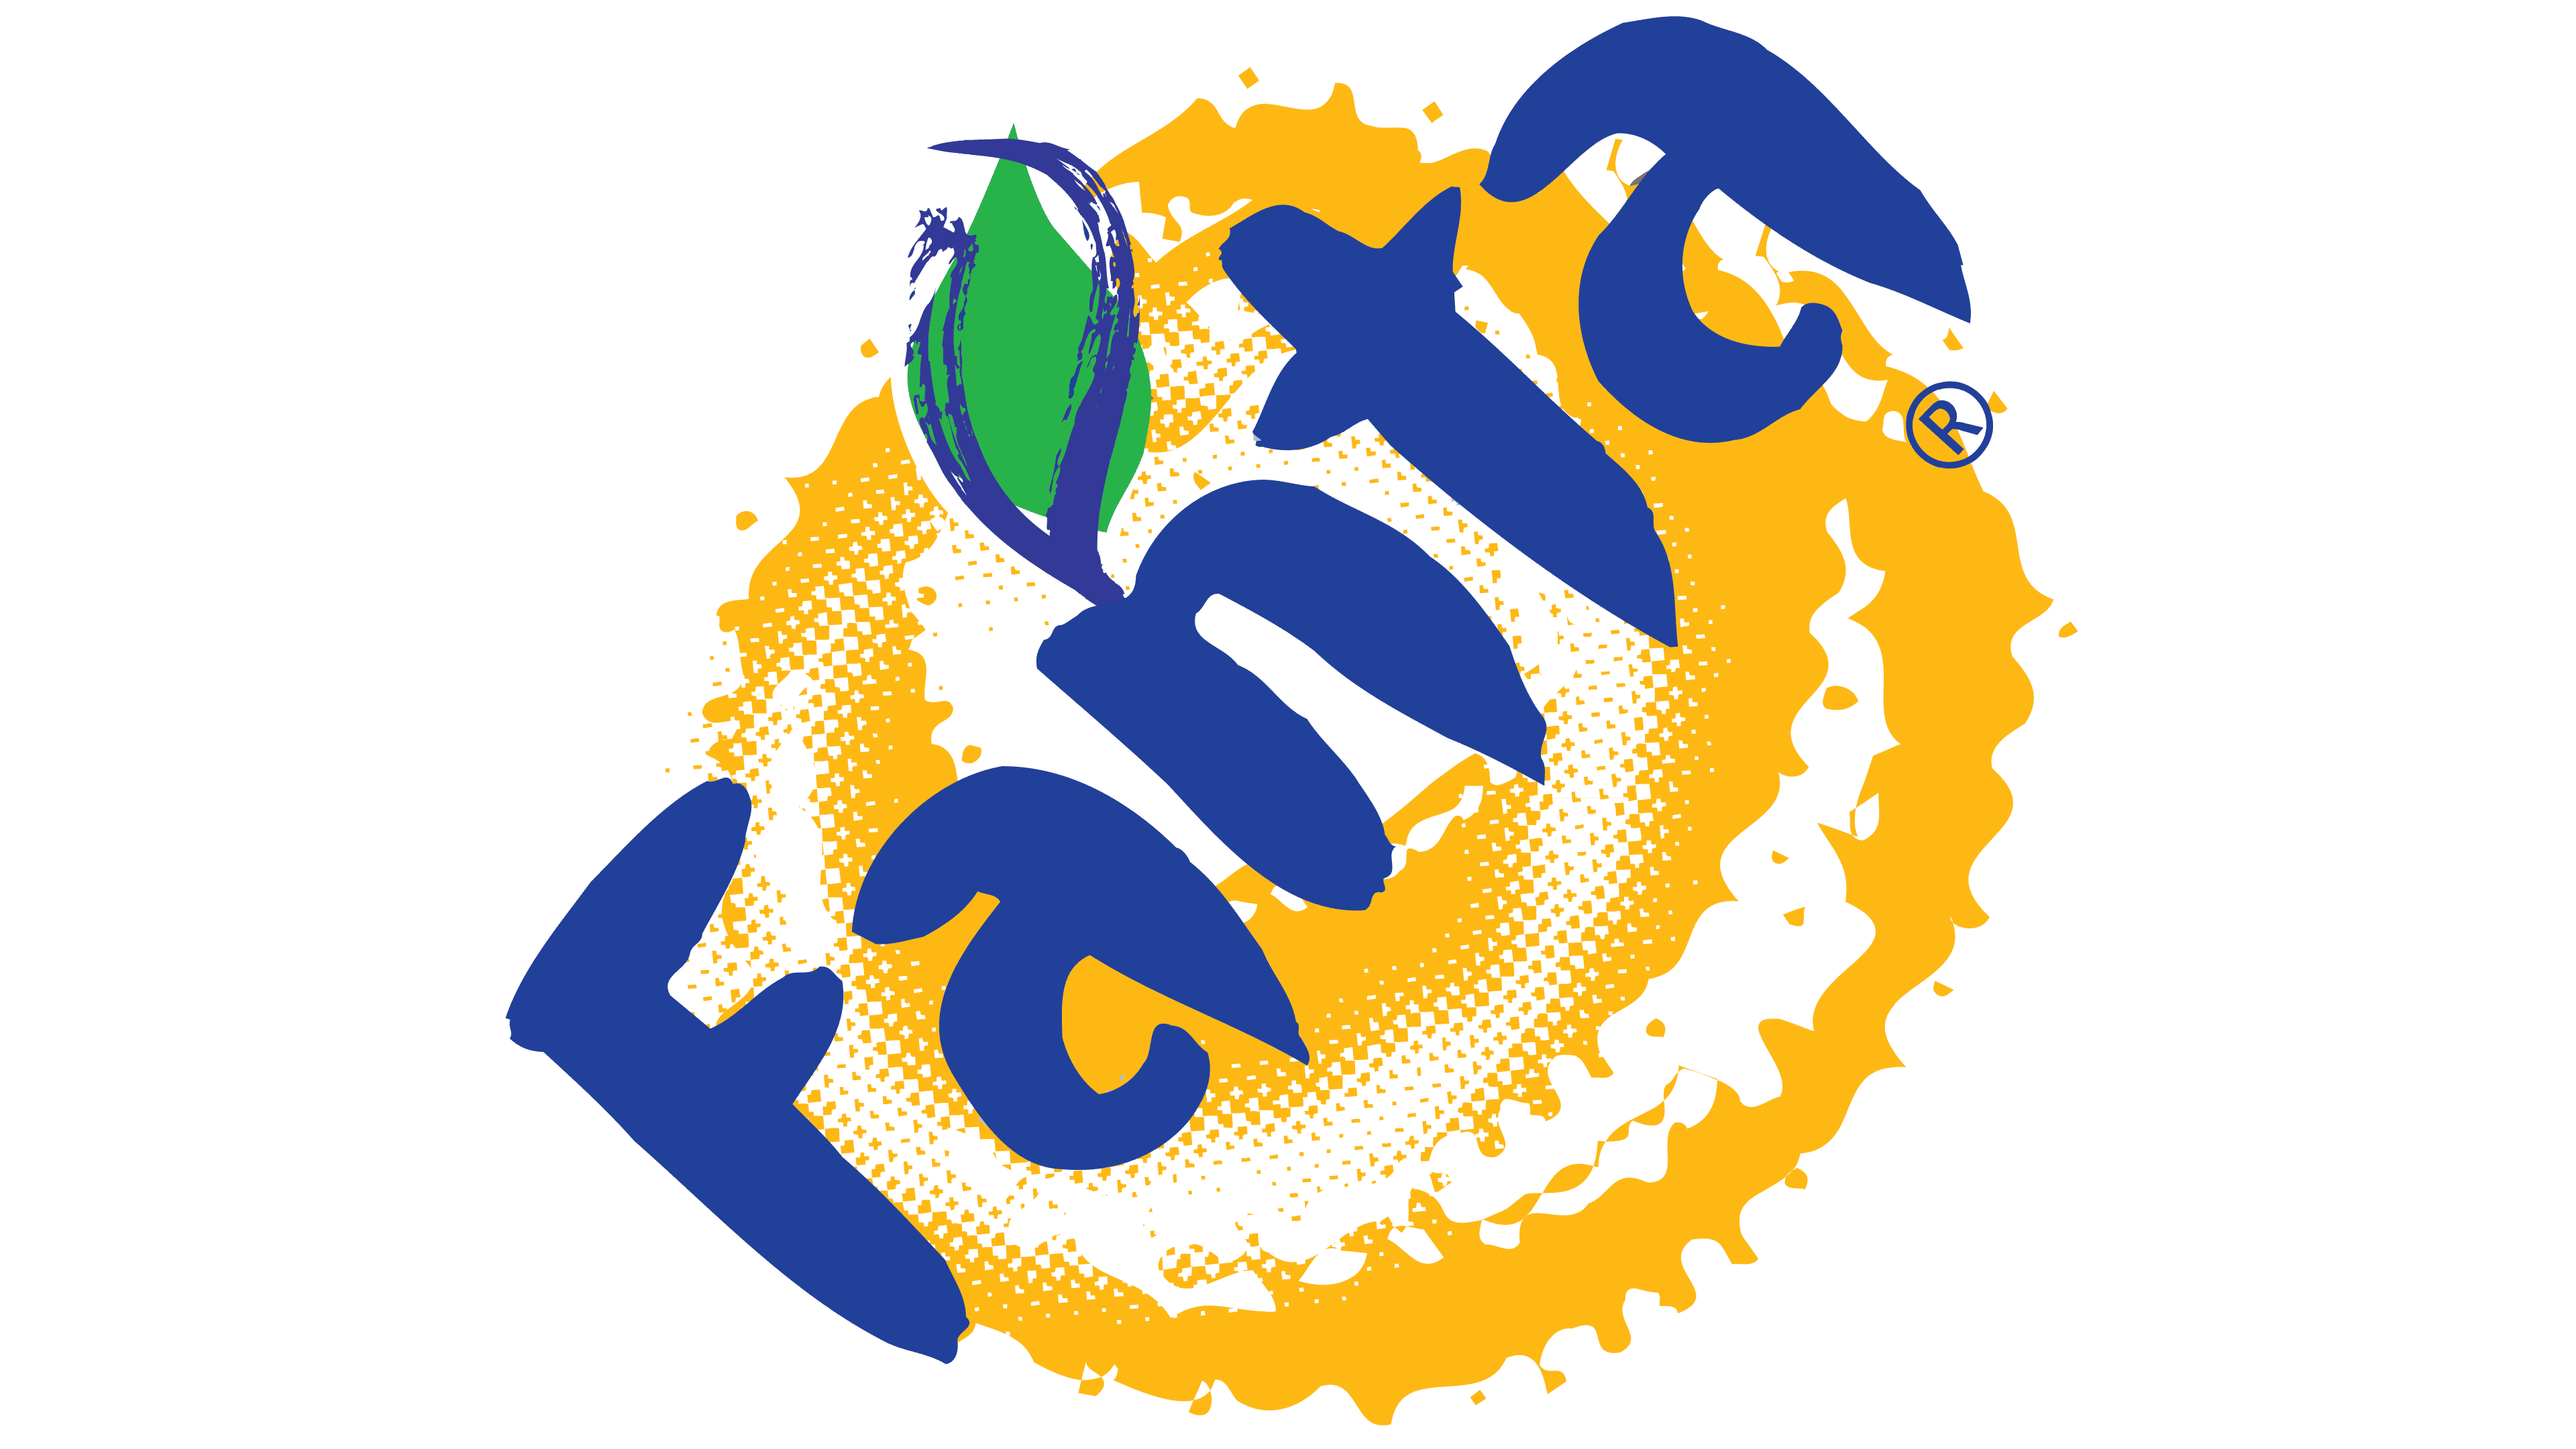 Fanta Orange Logo PNG Image Transparent Background